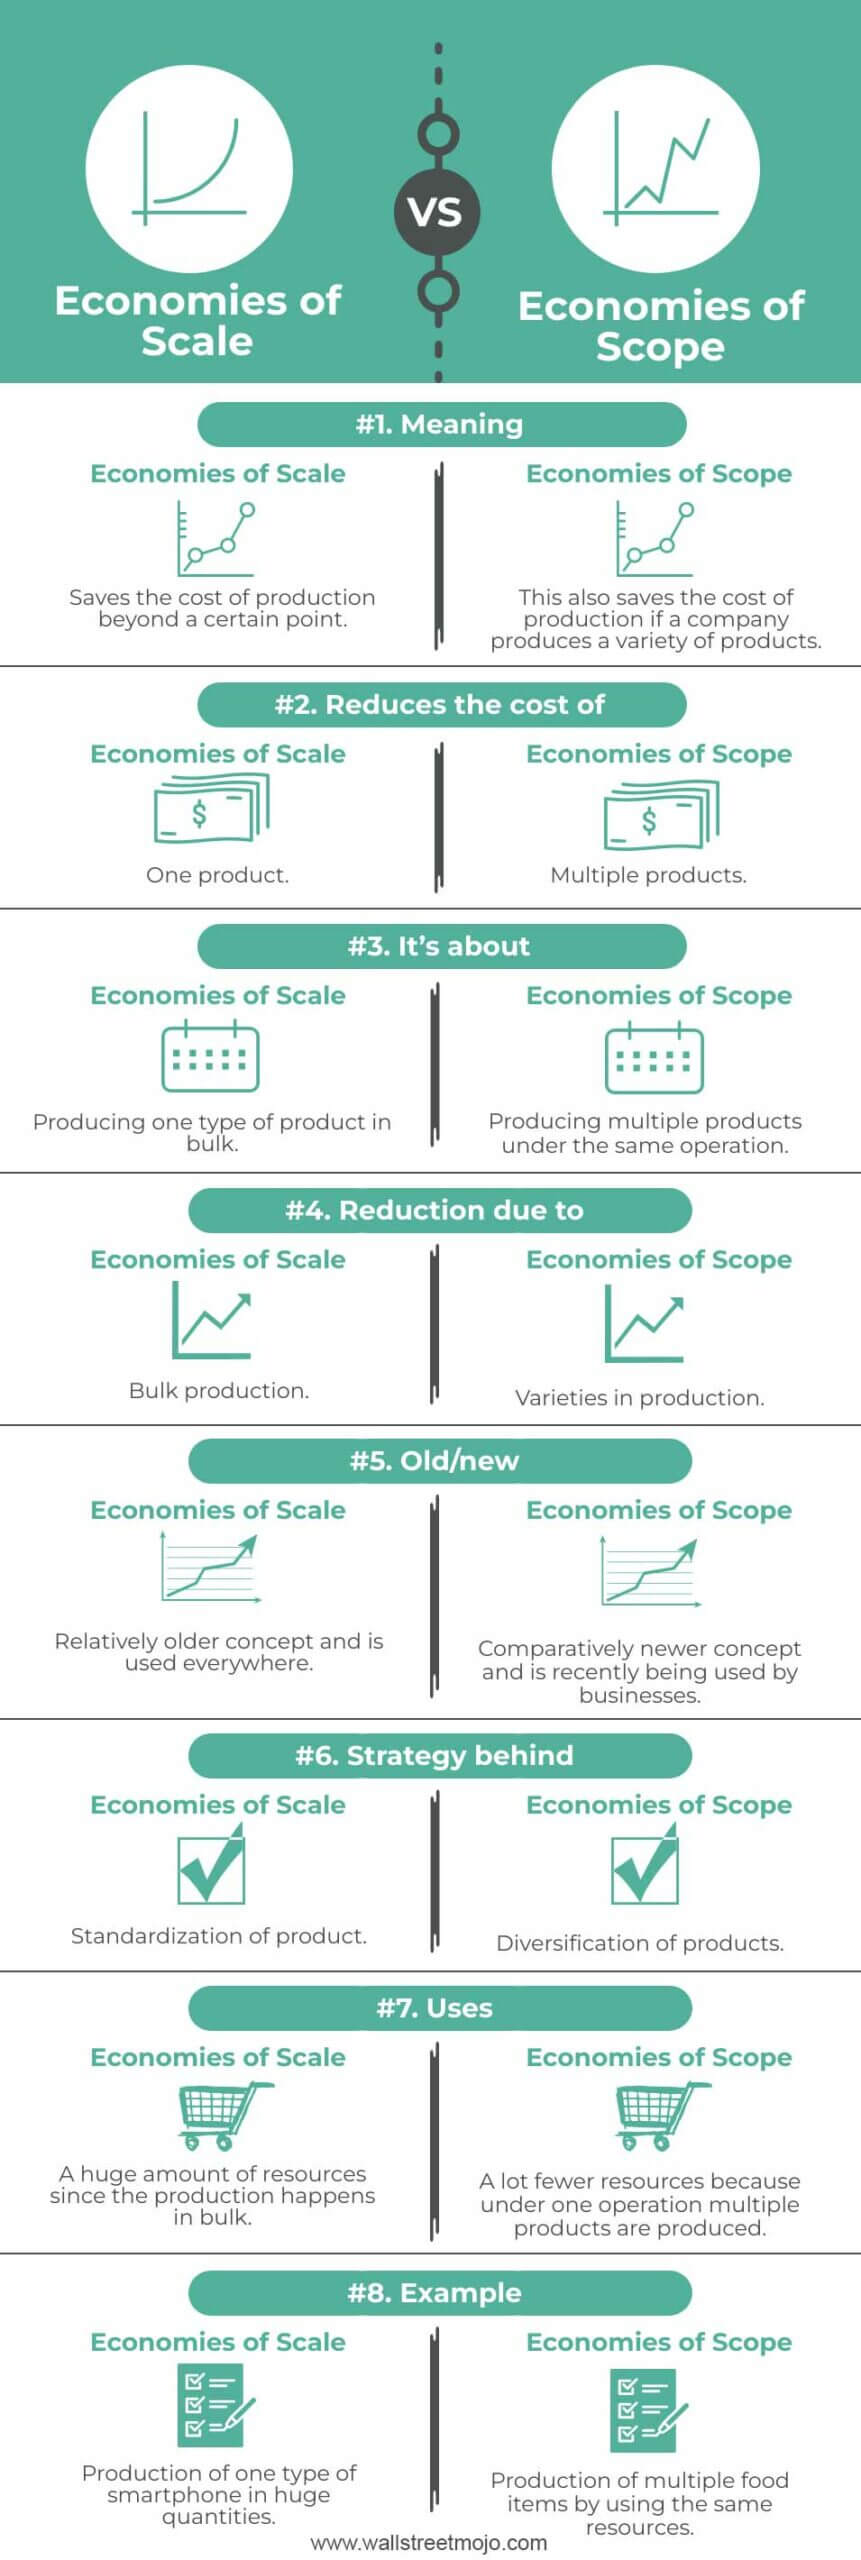 Economies-of-Scale-vs-Economies-of-Scope-info-new